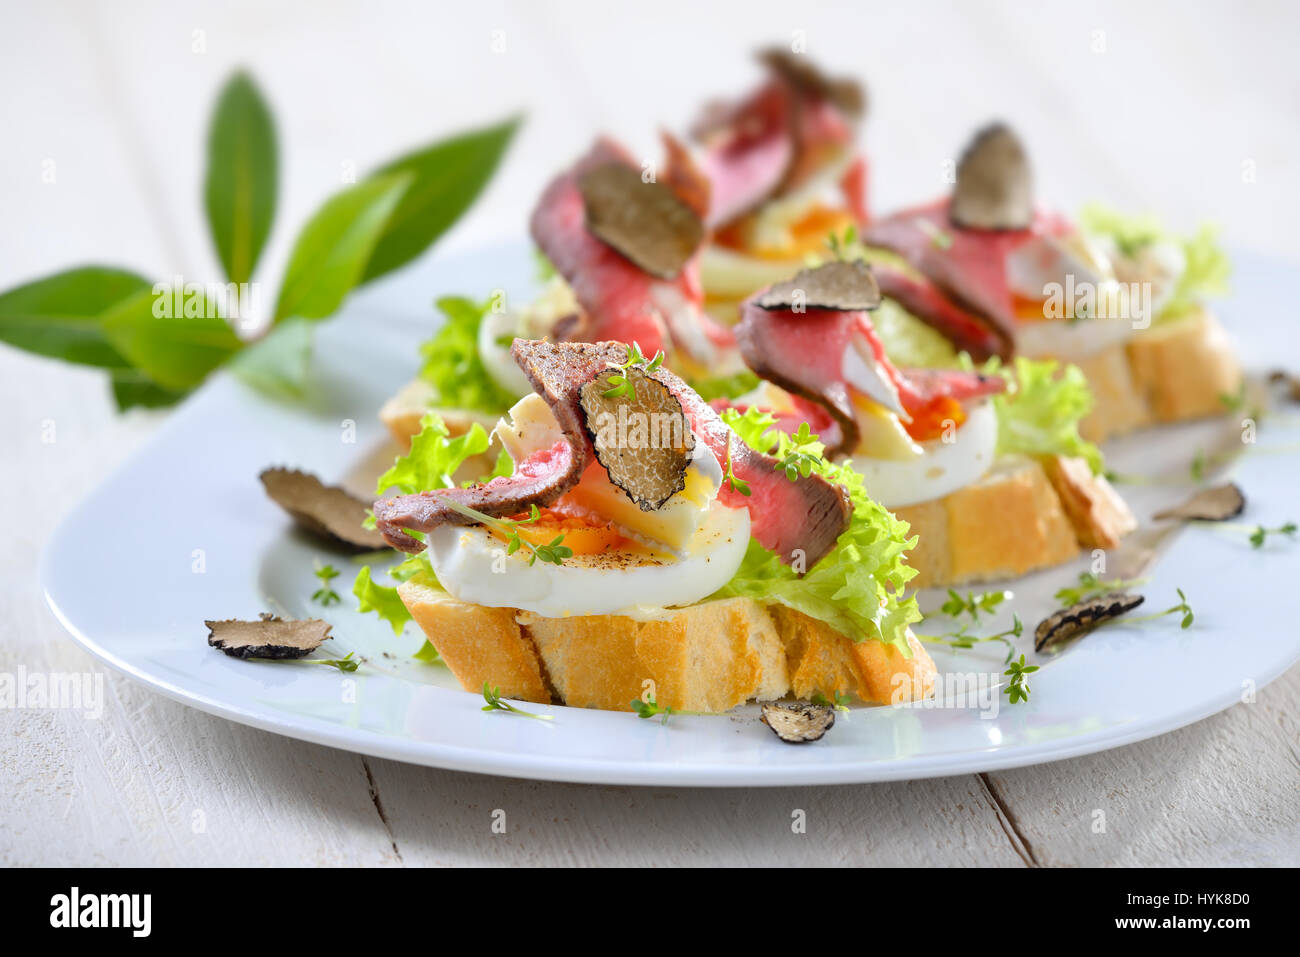 Sandwich Mit Kaltem Fleisch Stockfotos und -bilder Kaufen - Alamy